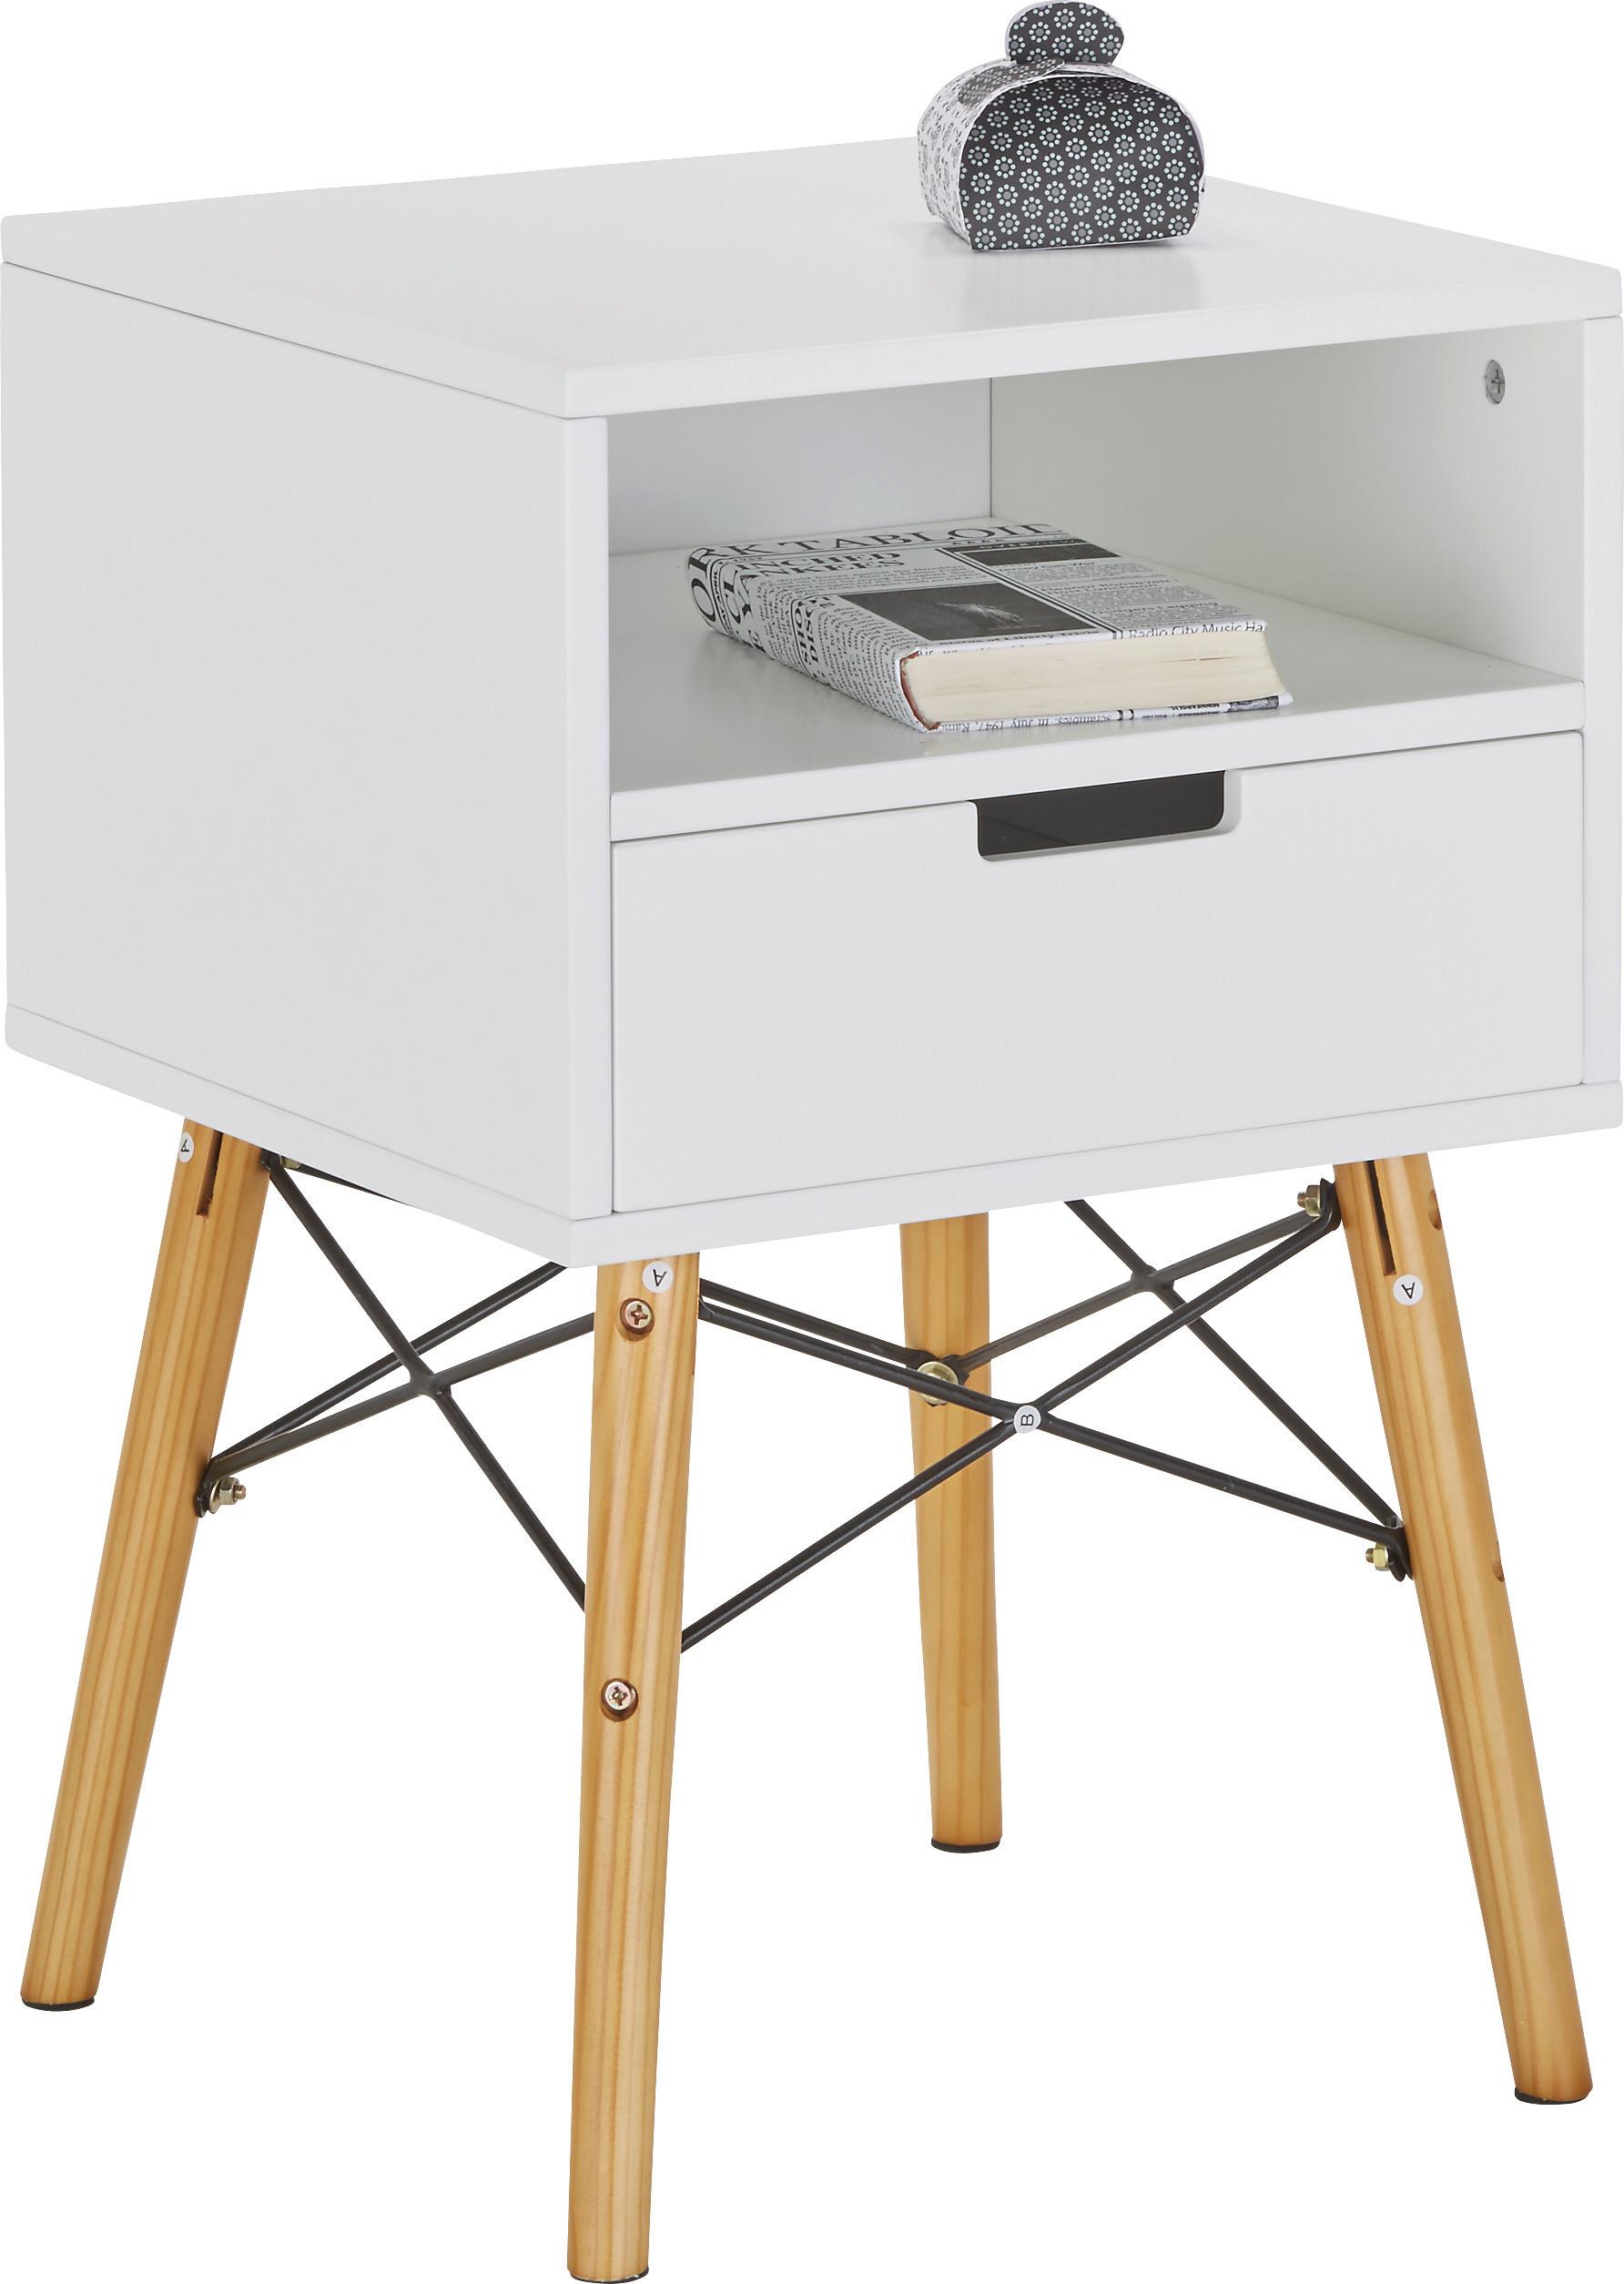 Kommode in Weiß - Weiß/Naturfarben, MODERN, Holz/Holzwerkstoff (40/61/40cm) - Modern Living